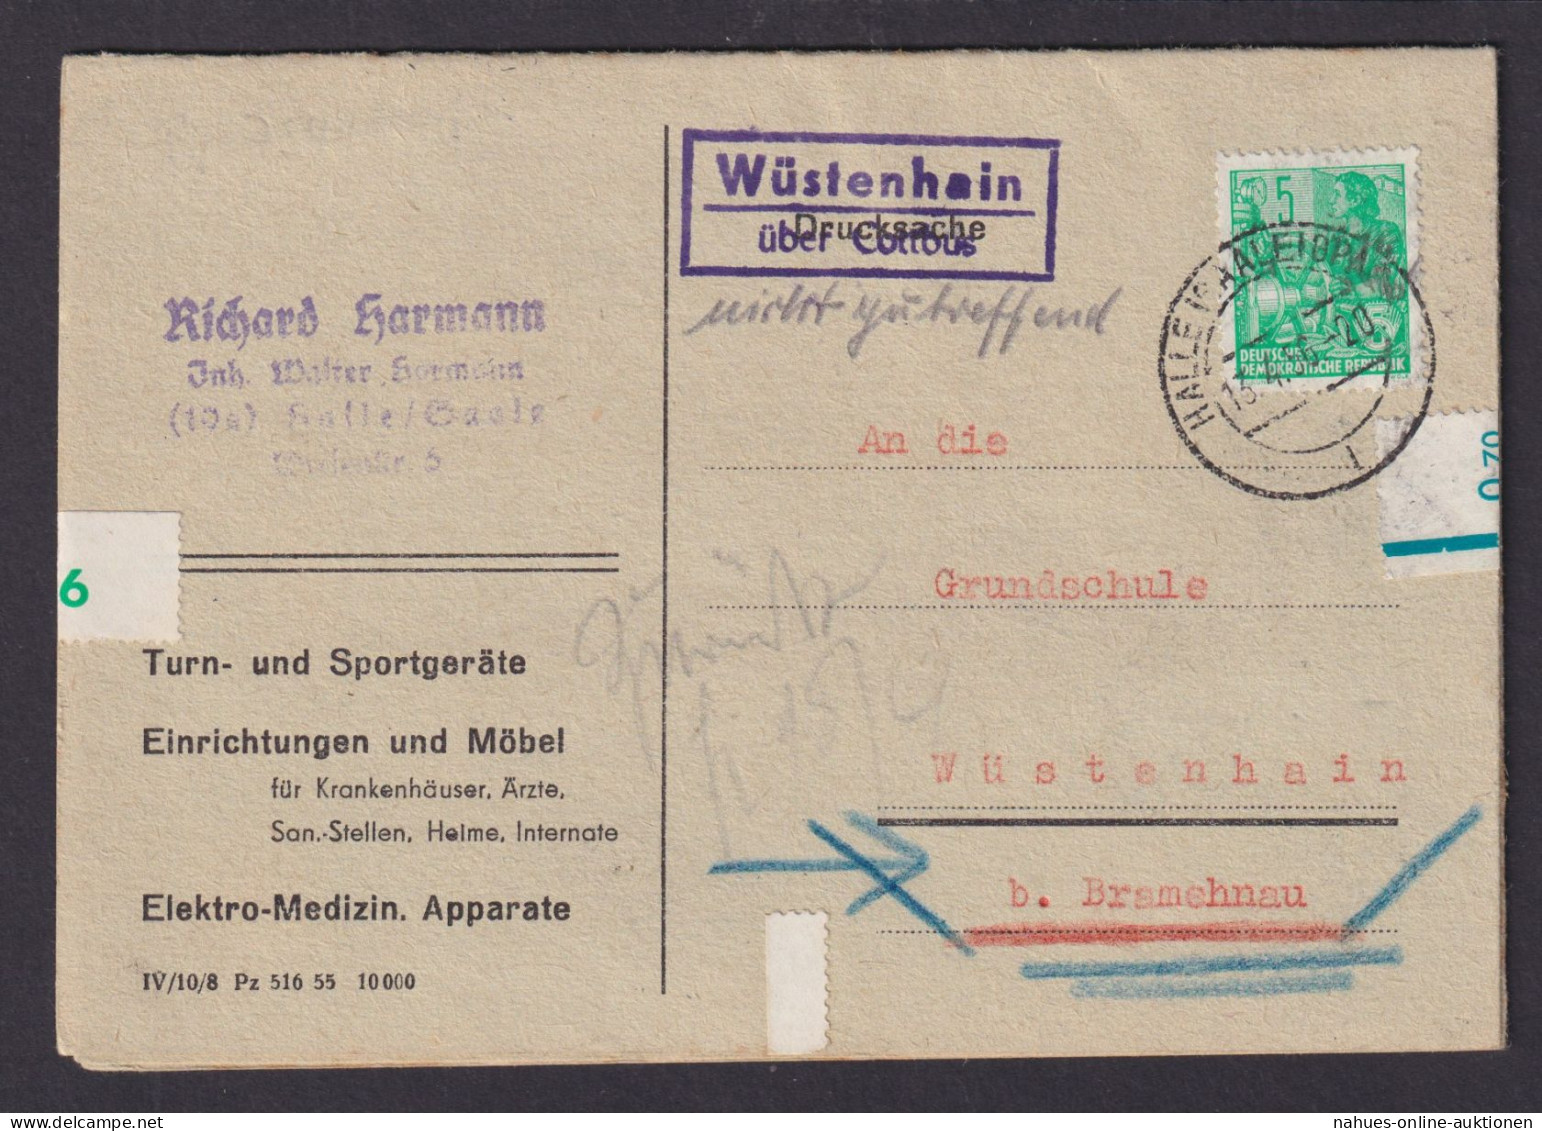 Wüstenhain über Cottbus Brandenburg DDR Bestellkarte Landpoststempel N. Bramenau - Cartas & Documentos